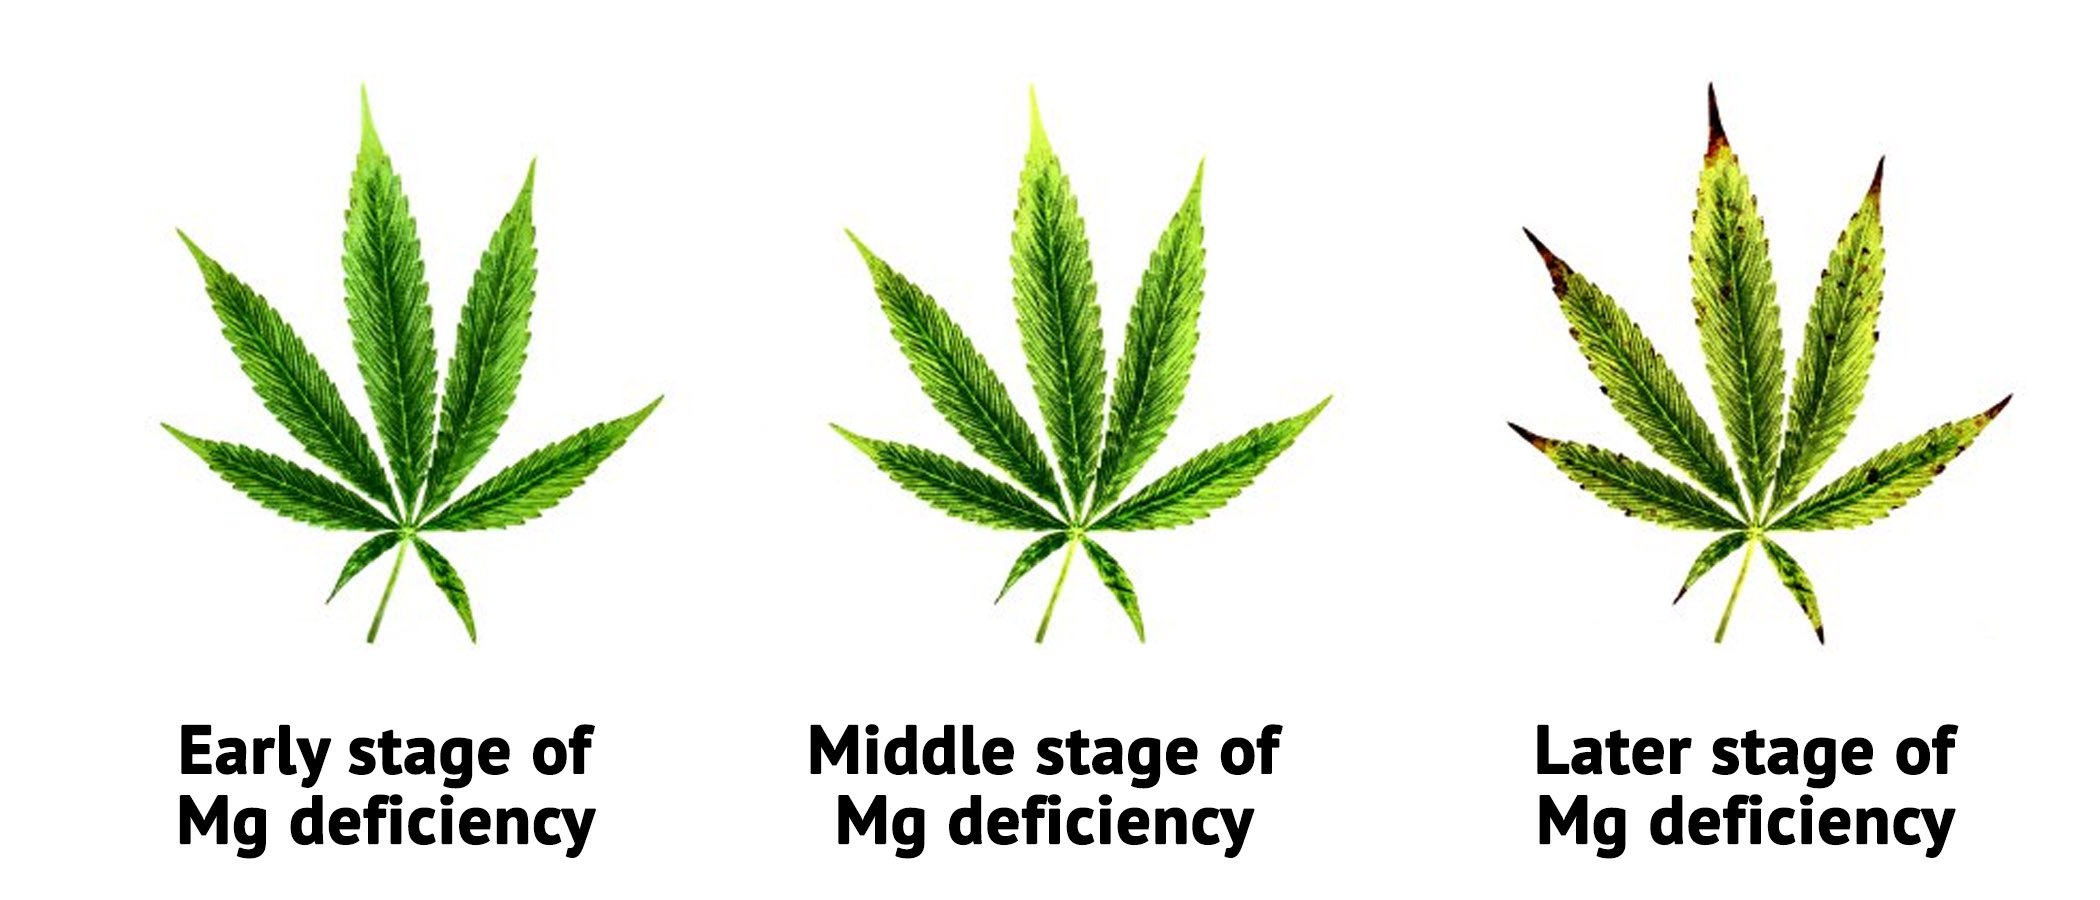 magnesium nutrient deficiency in marijuana